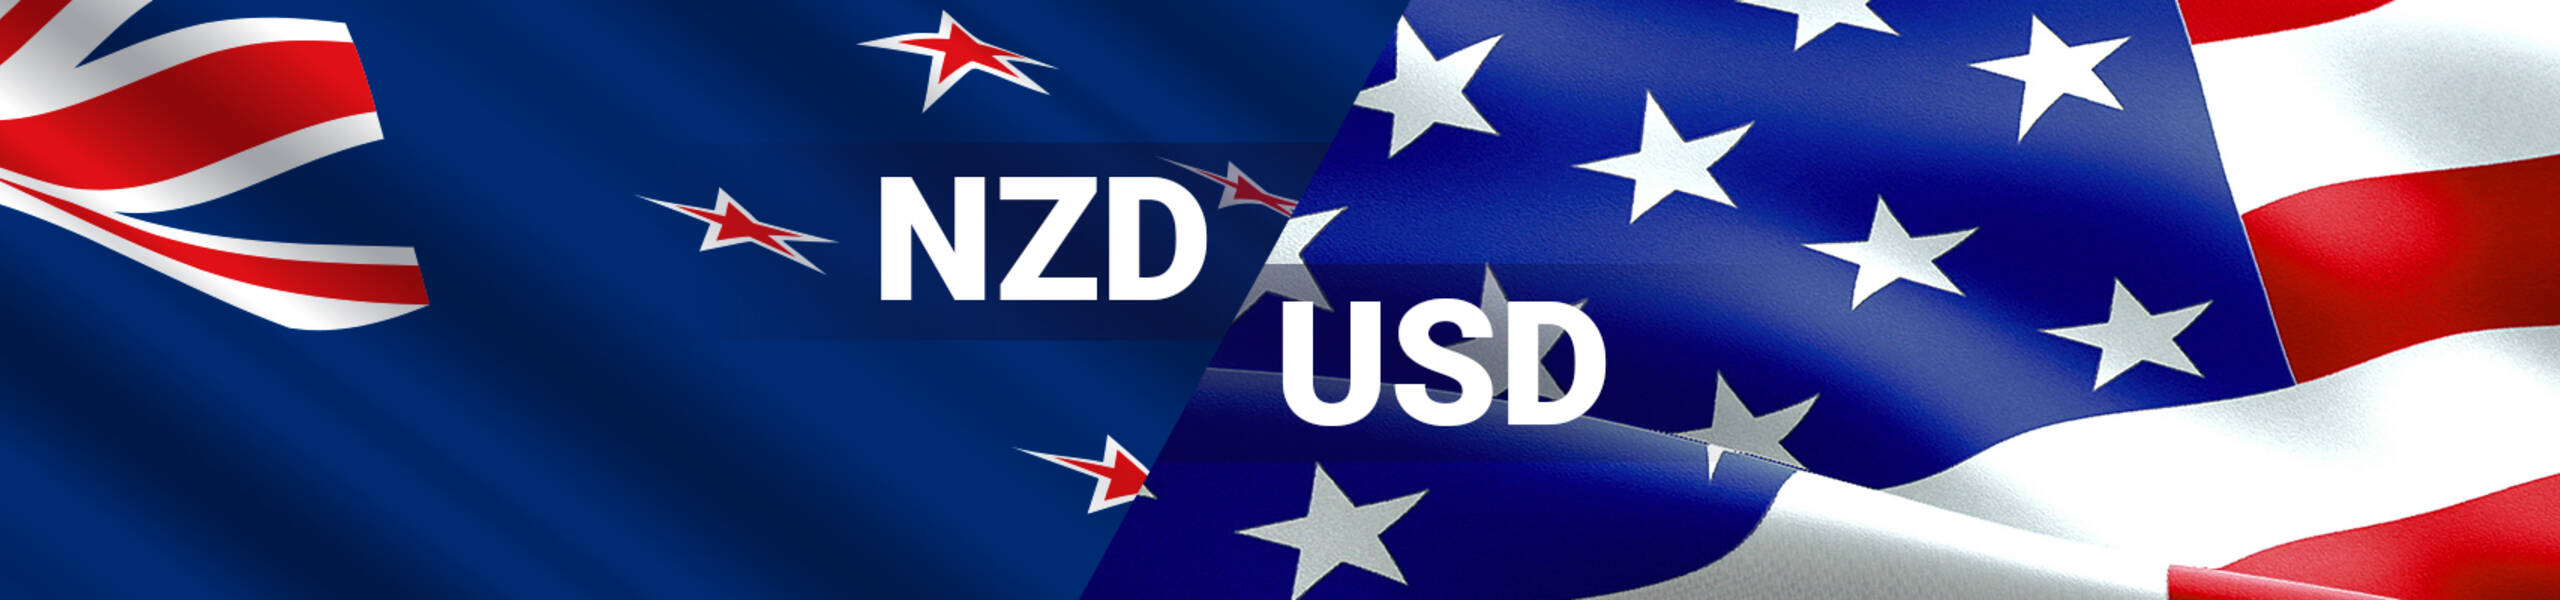 NZD/USD: kiwi votes for the correction